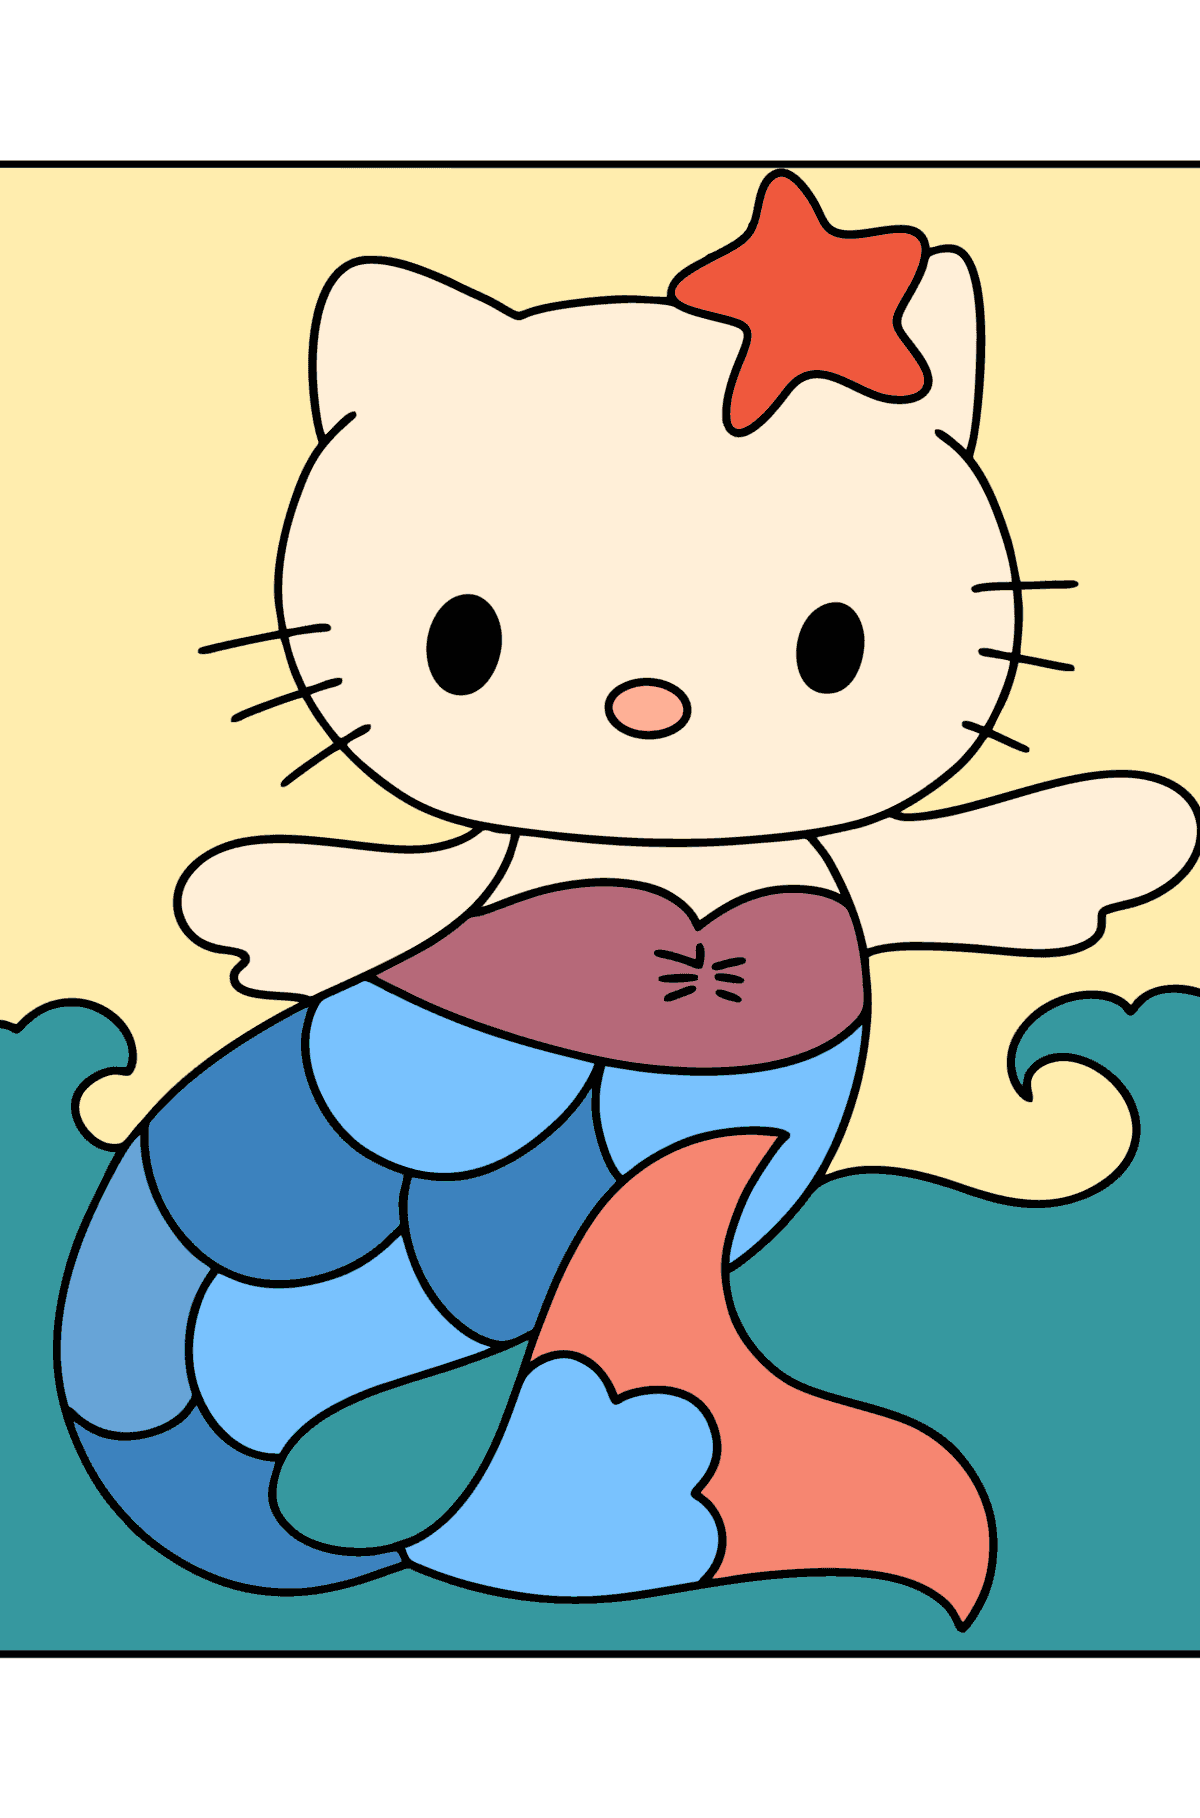 Kolorowanka Hello Kitty Syrenka - Kolorowanki dla dzieci